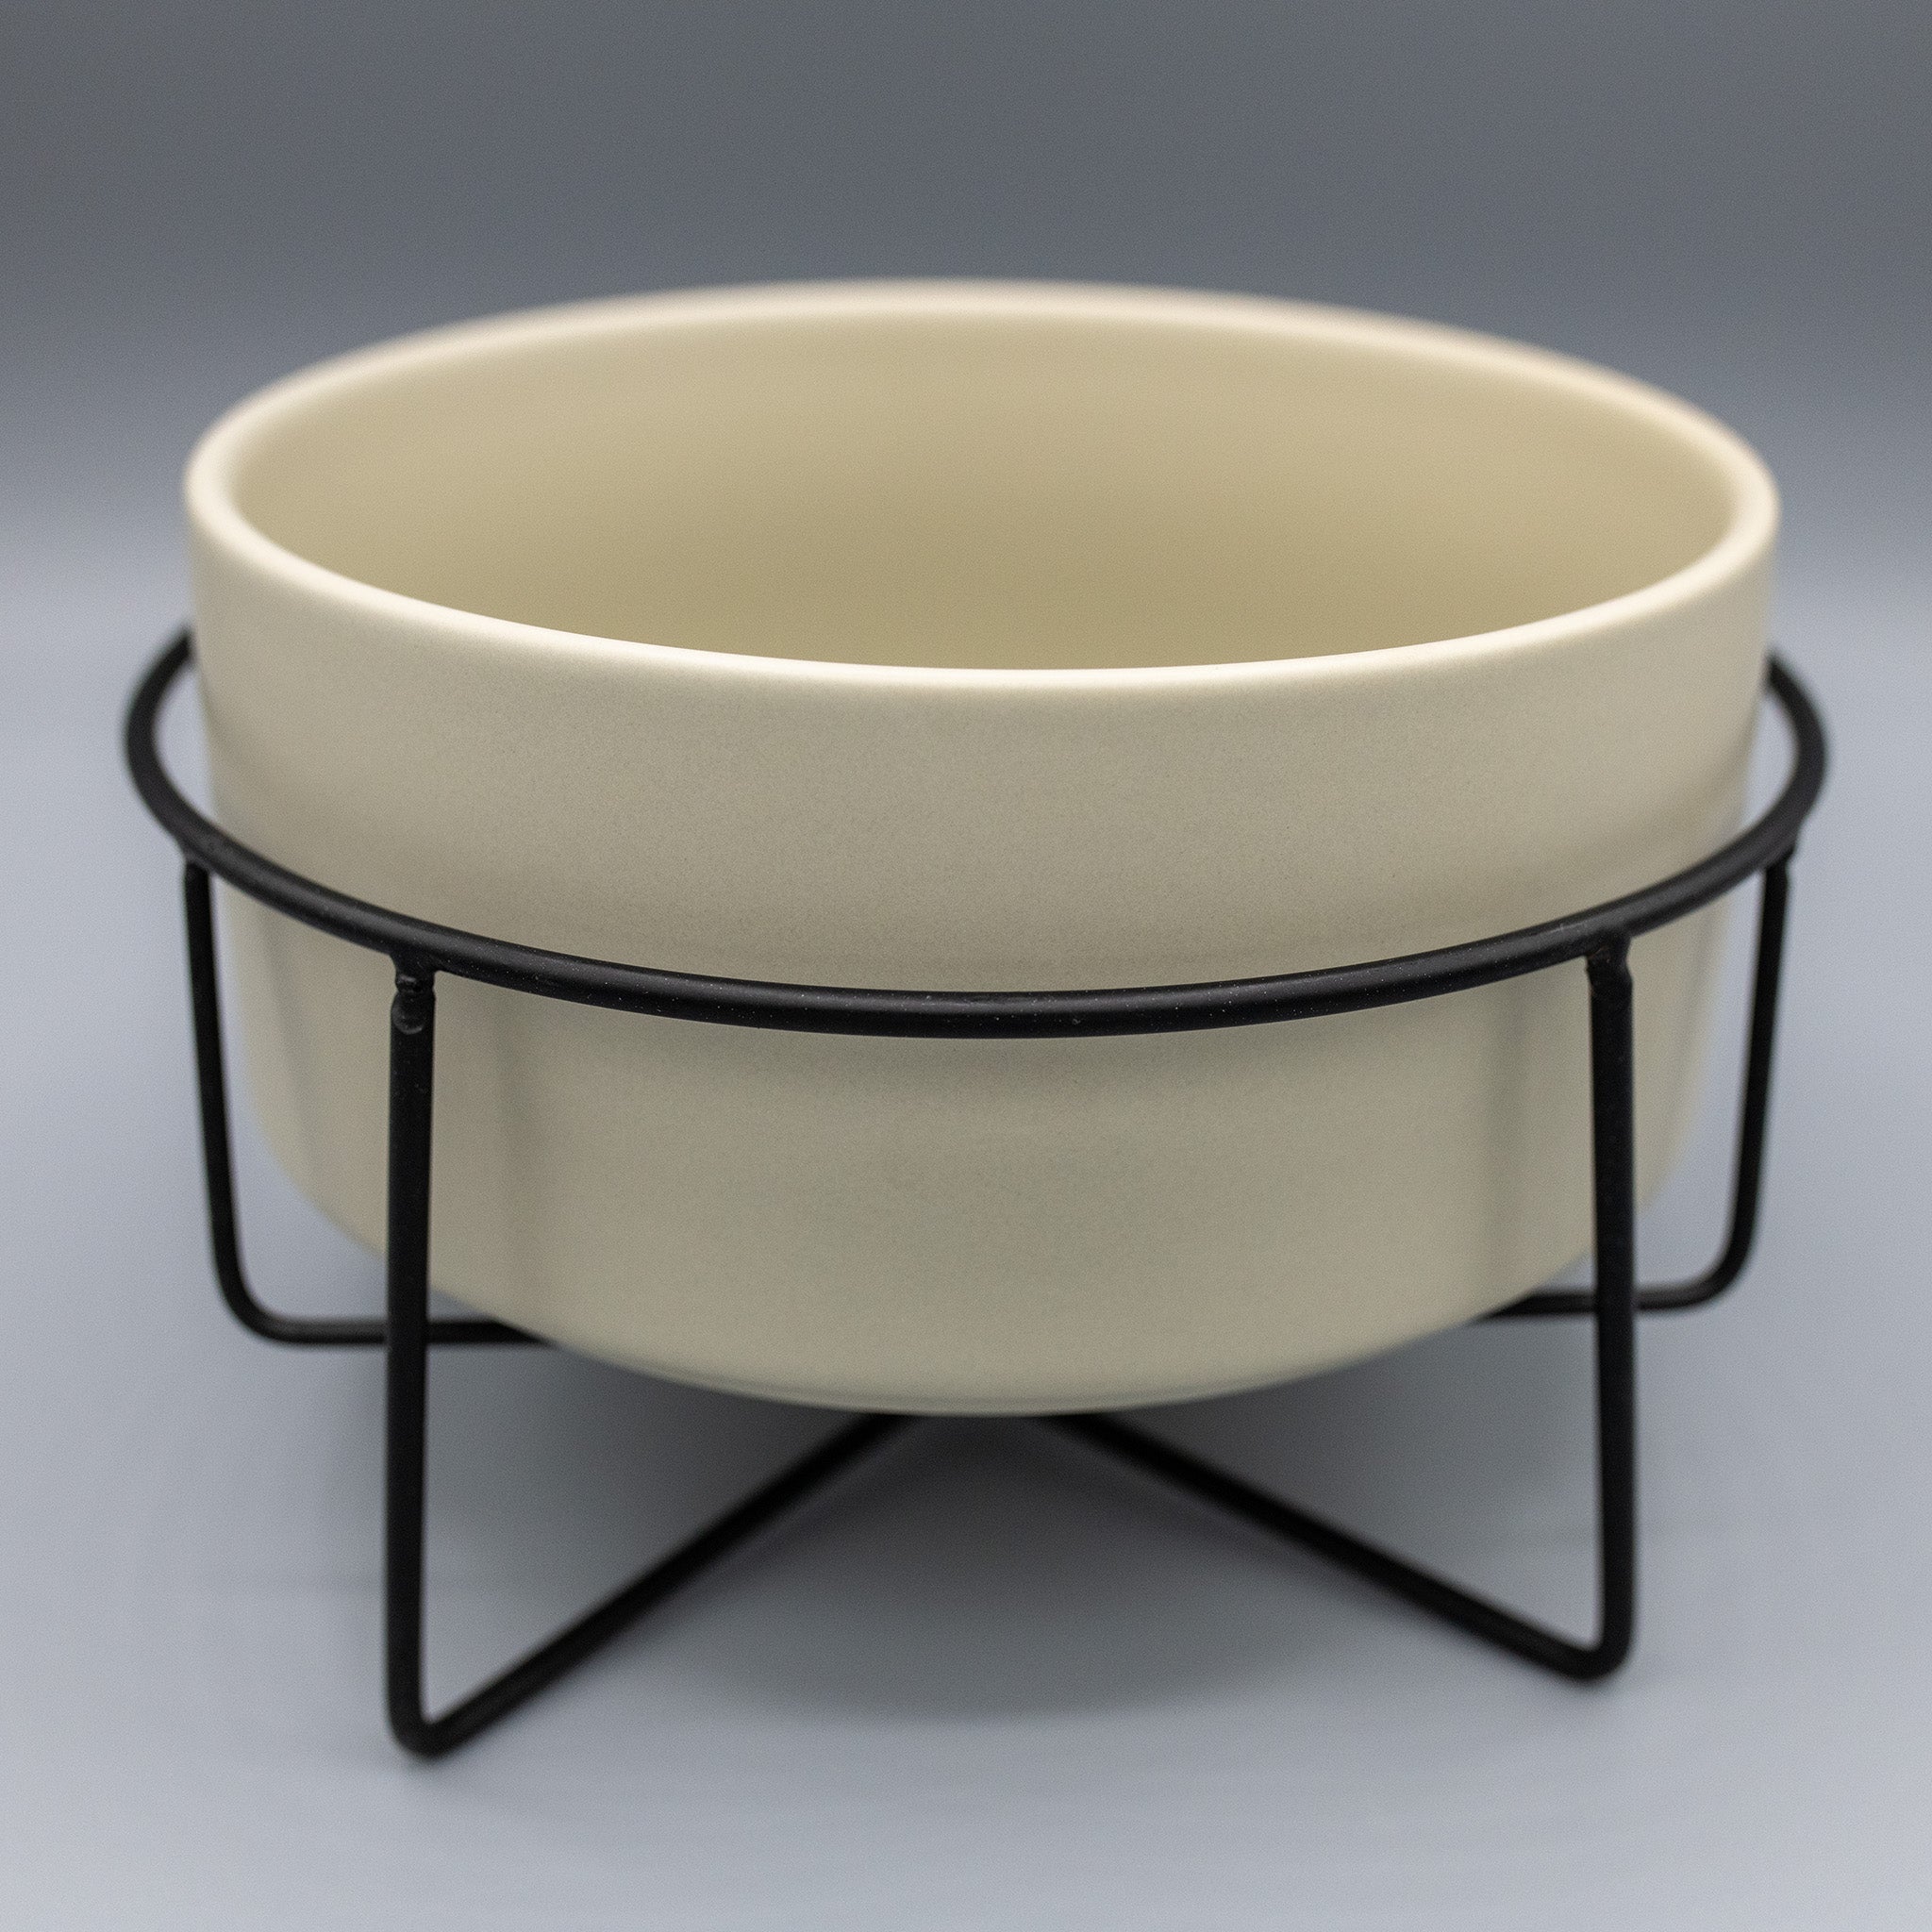 Ceramic bowl John with metal frame